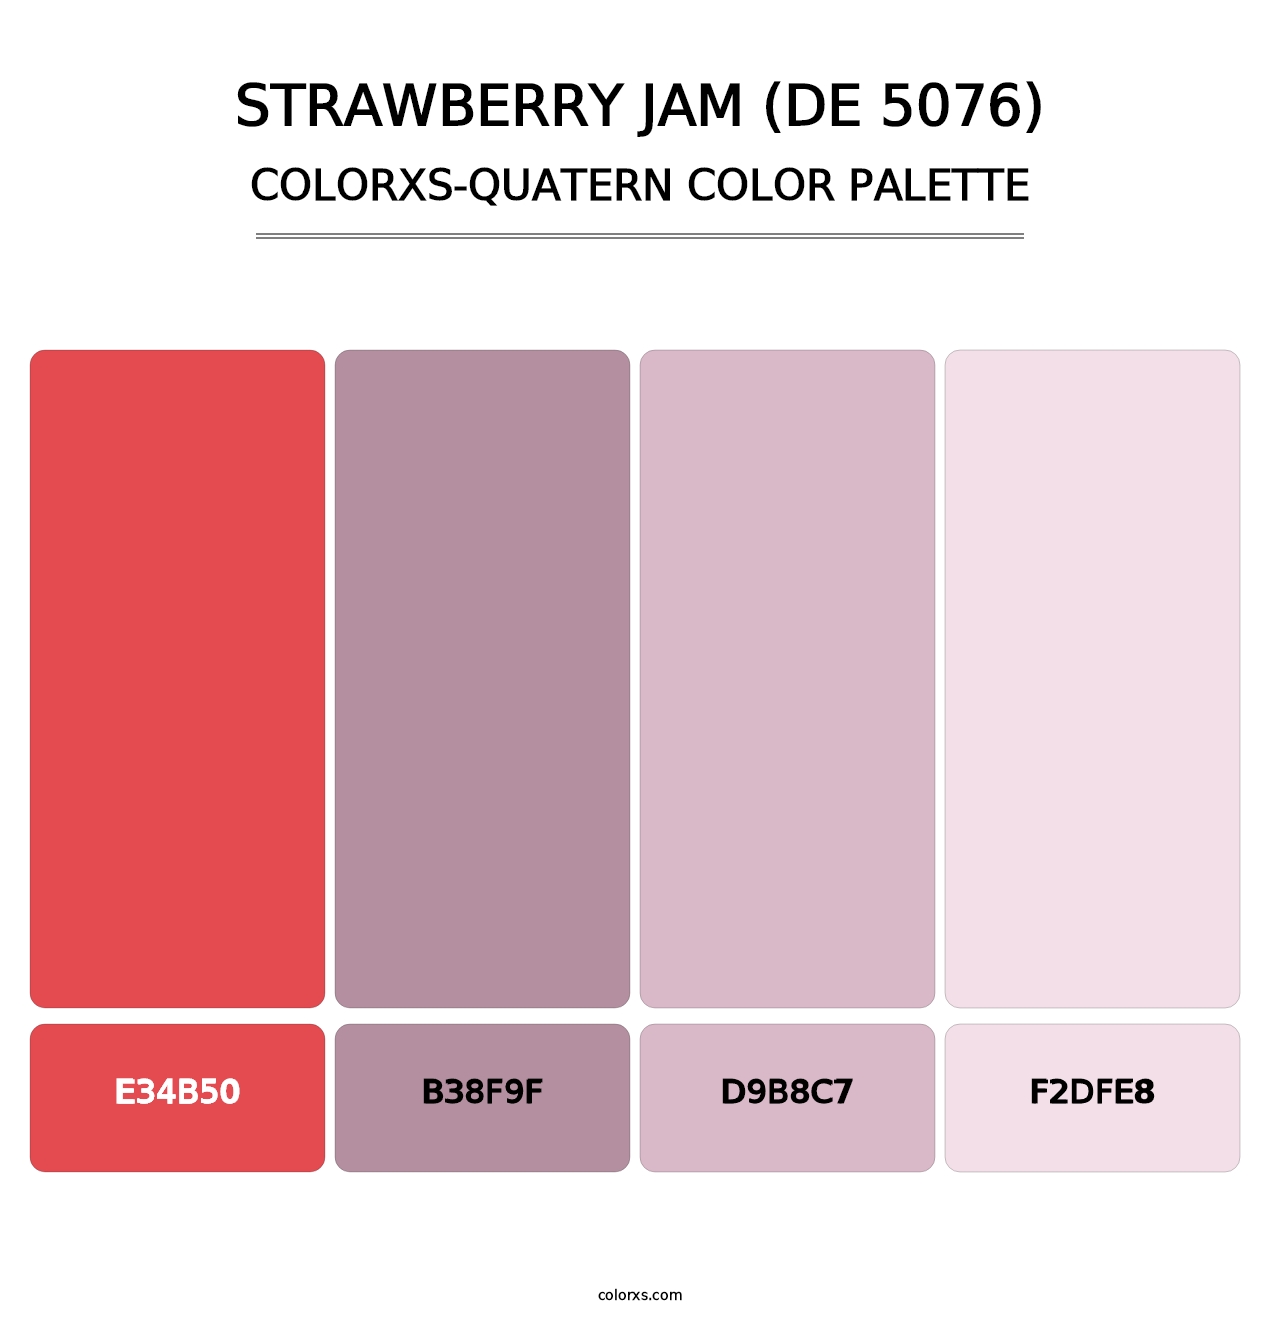 Strawberry Jam (DE 5076) - Colorxs Quatern Palette